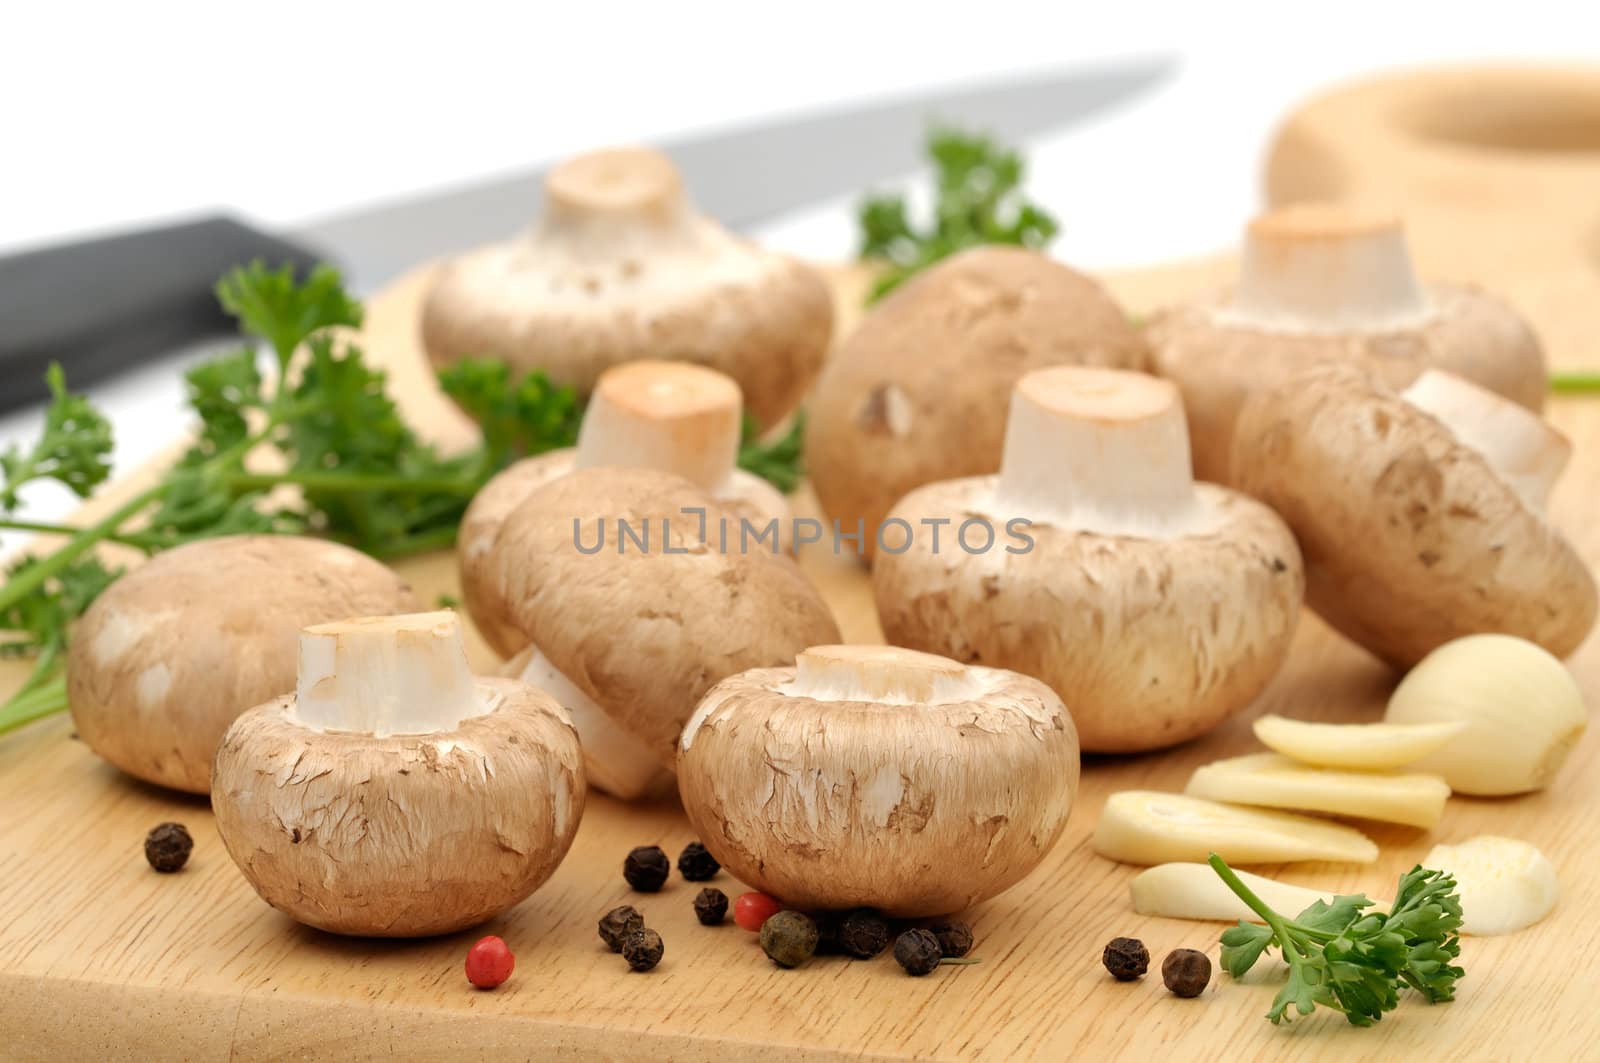 Preparing mushrooms by Hbak